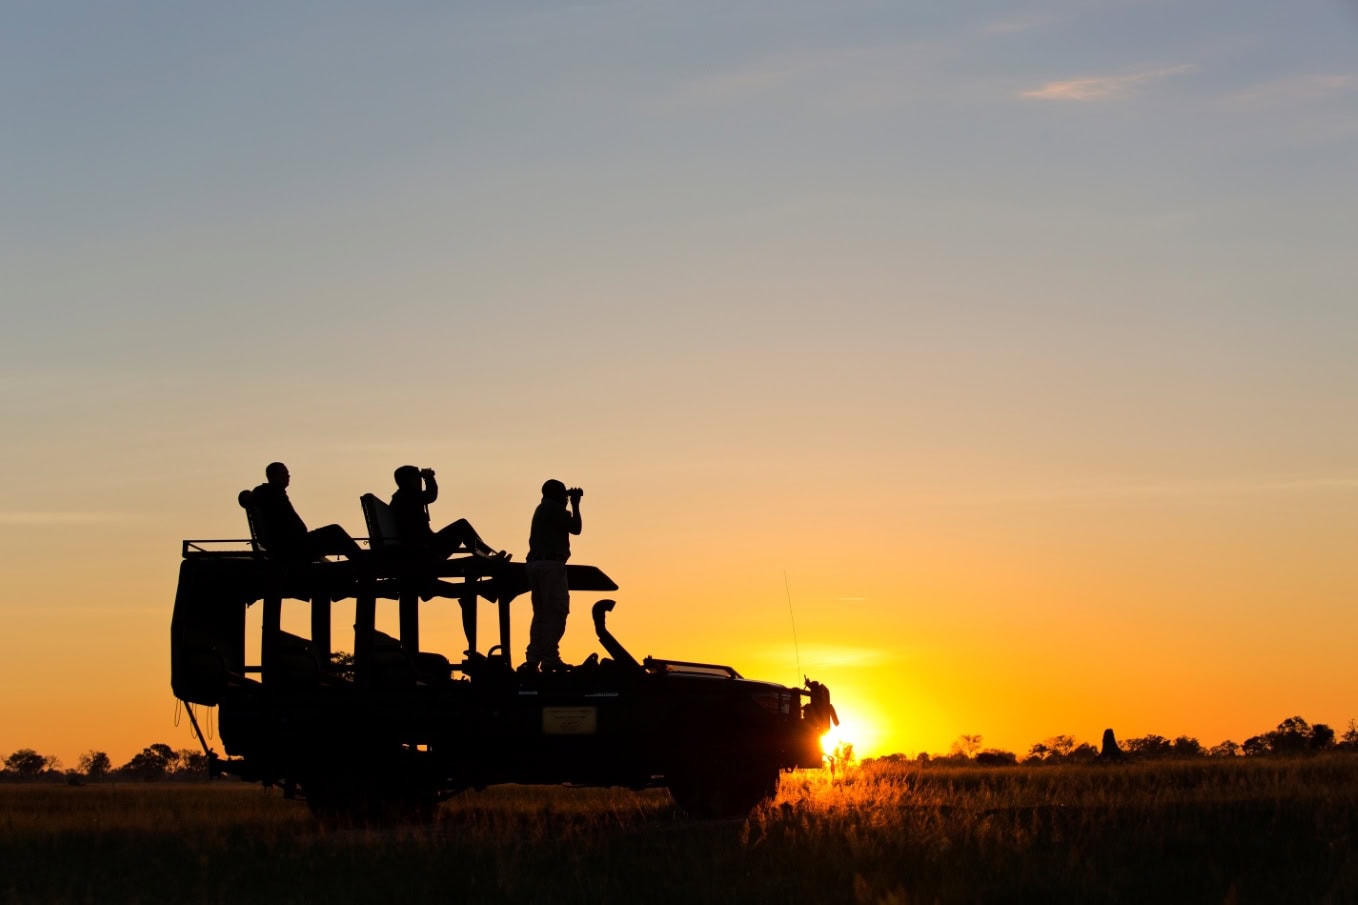 Safari Jeep met gasten zittend op het dak onderwijl genietend van de zonsondergang